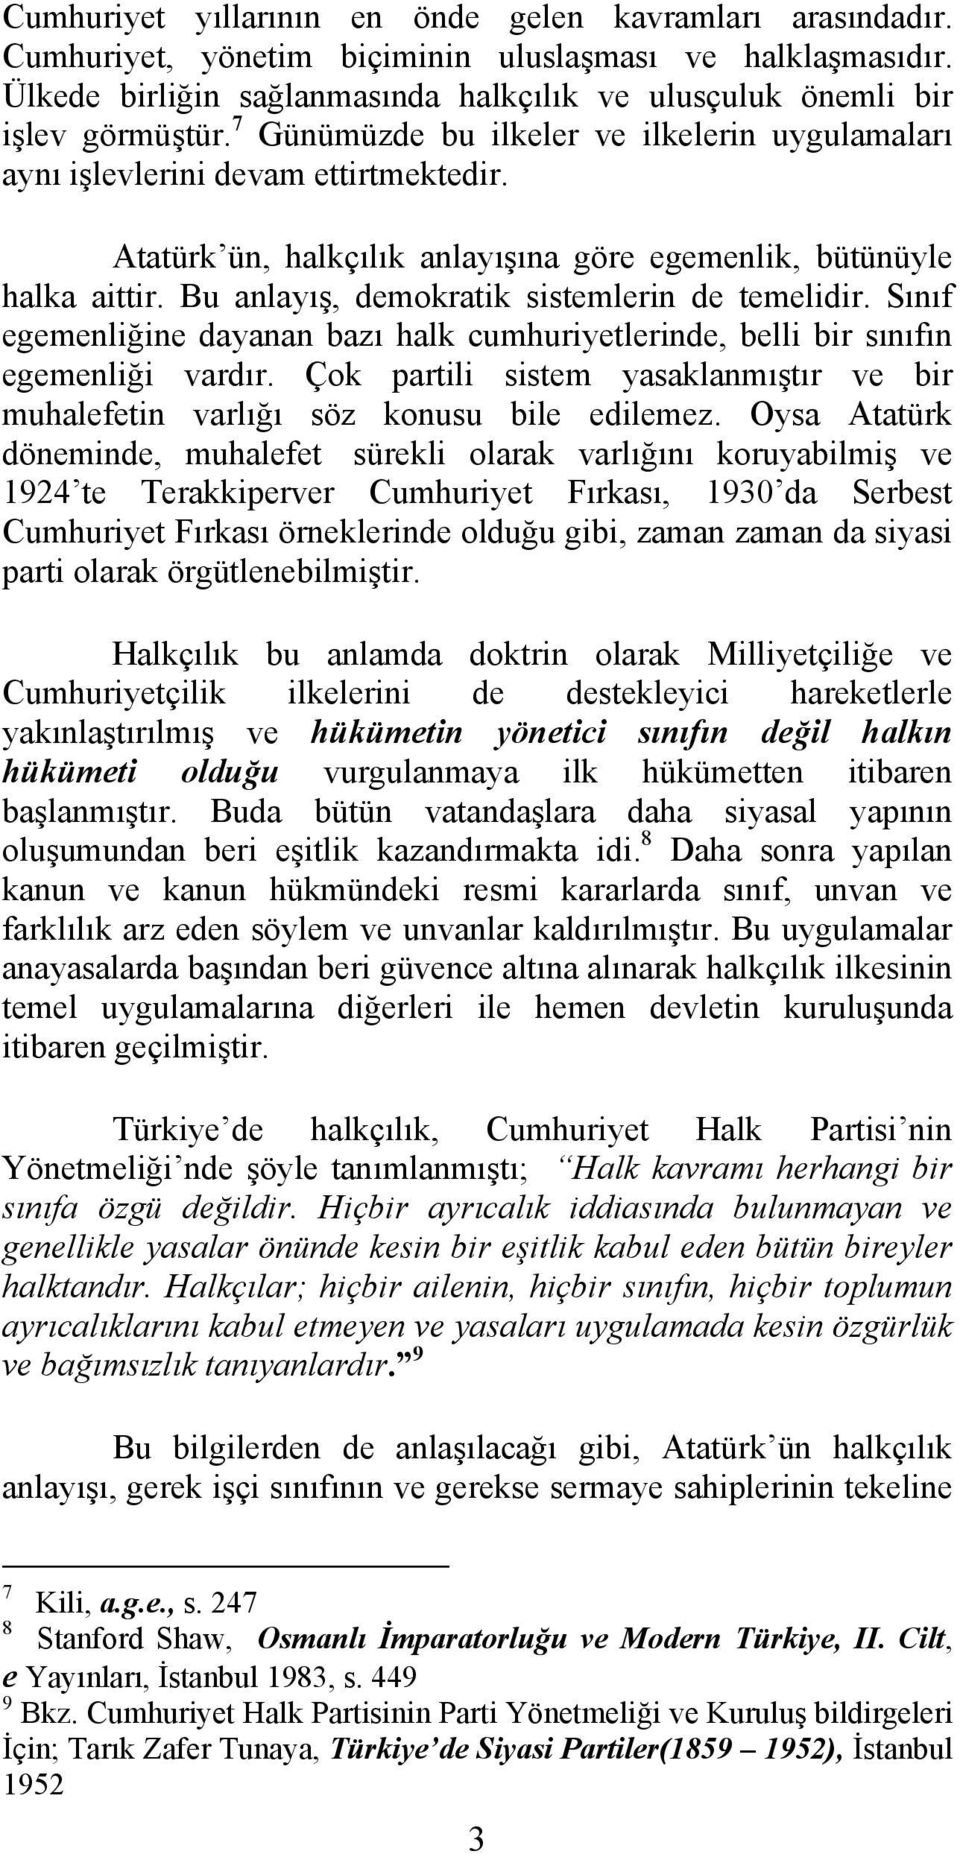 Atatürk ün, halkçılık anlayışına göre egemenlik, bütünüyle halka aittir. Bu anlayış, demokratik sistemlerin de temelidir.